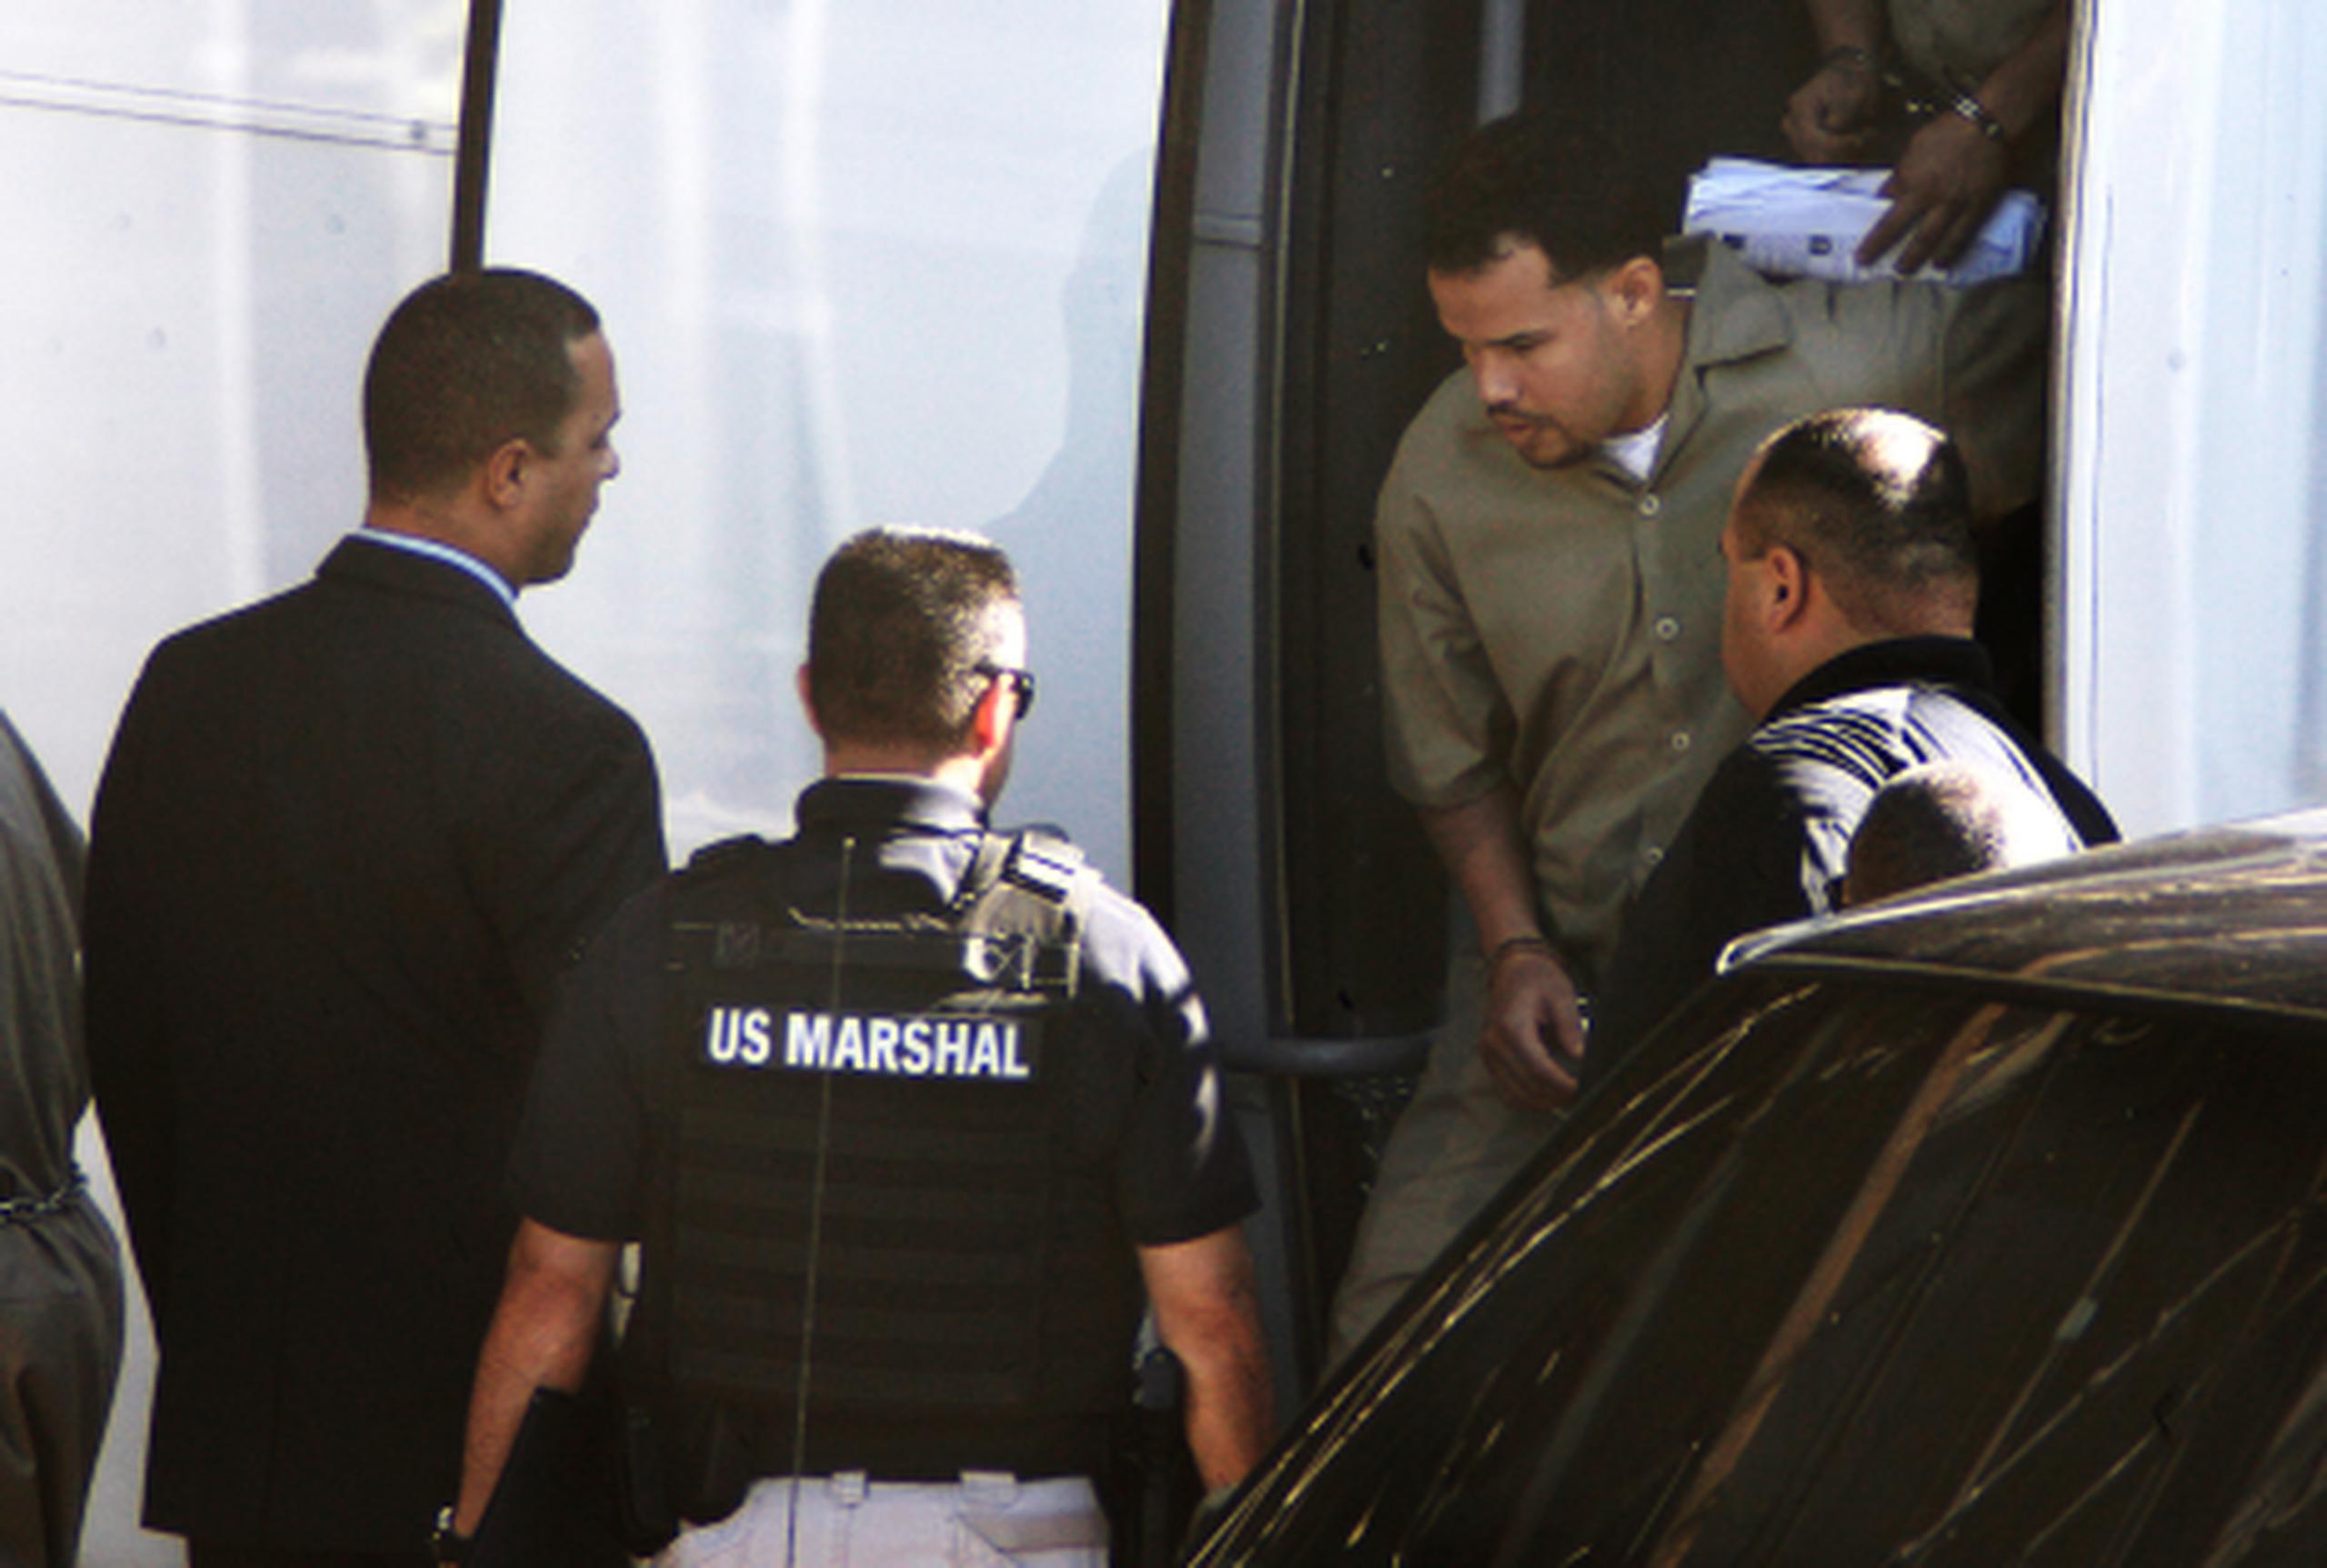 Soto a su llegada al Tribunal Federal en septiembre de 2011 posterior a su arresto en un operativo federal.
(gerald.lopez@gfrmedia.com)